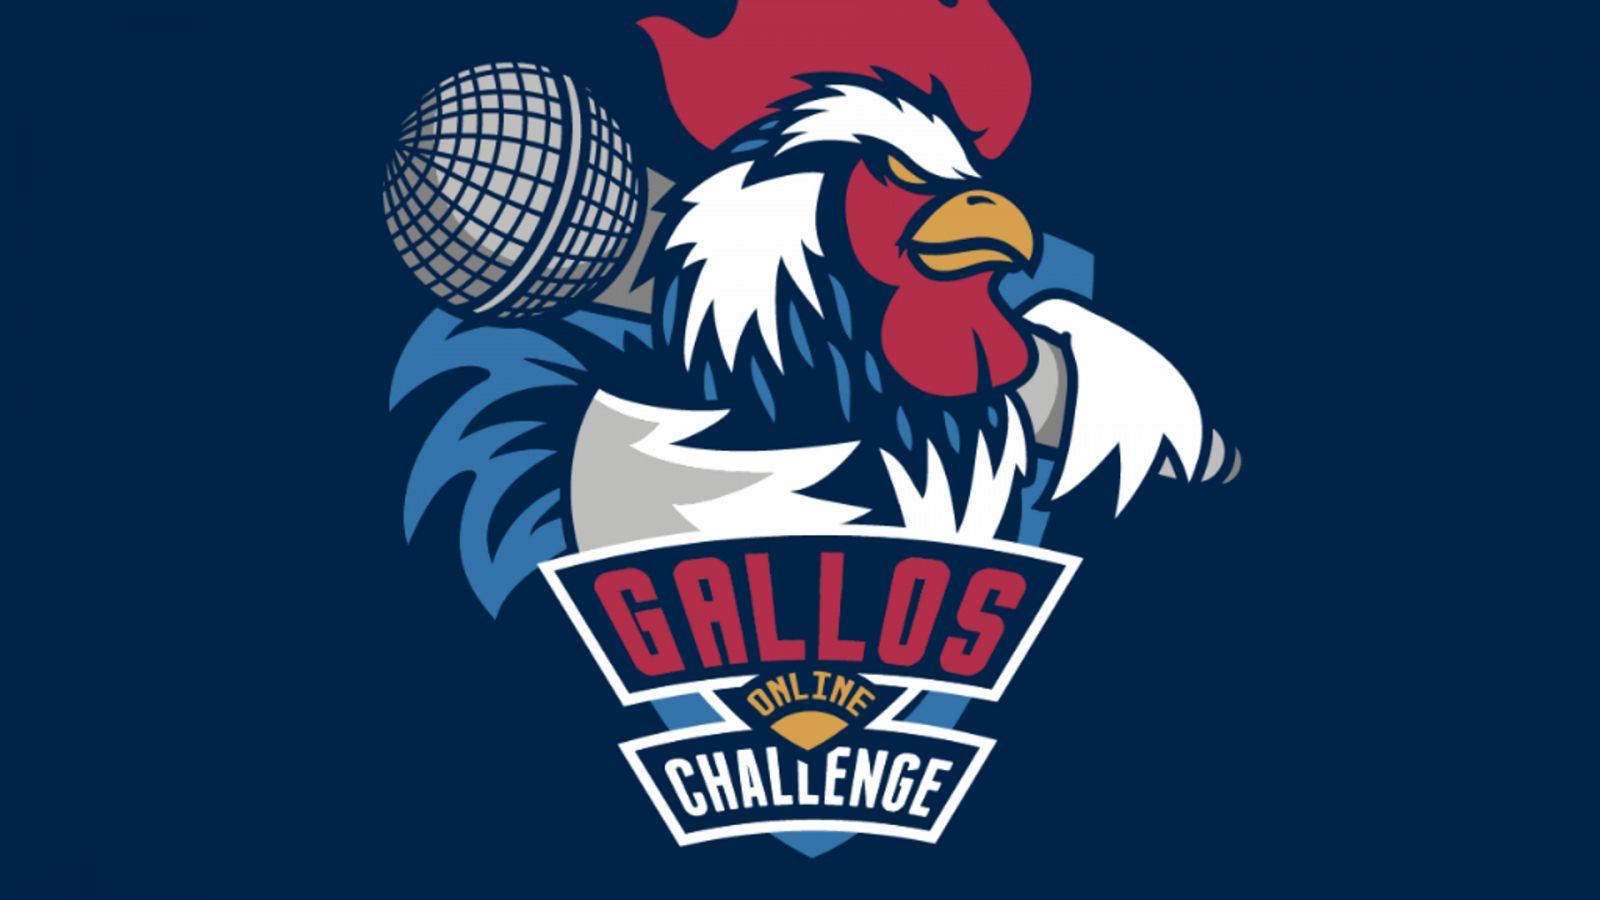 El festival de Riverland acogerá a los finalistas de Gallos Online Challenge